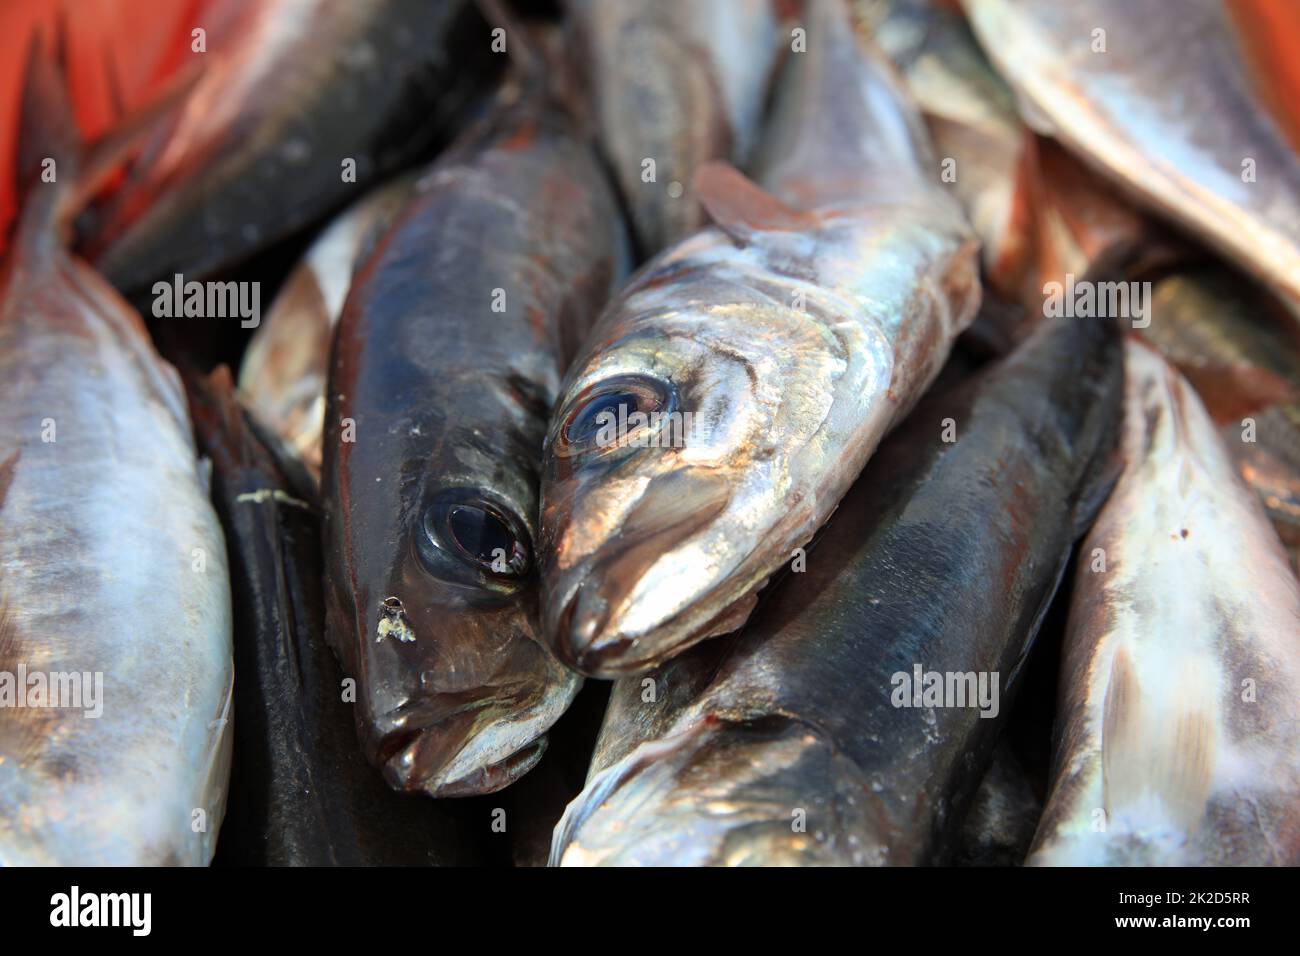 Pescato del giorno â€“ Pesce fresco pescato in Portogallo Foto Stock